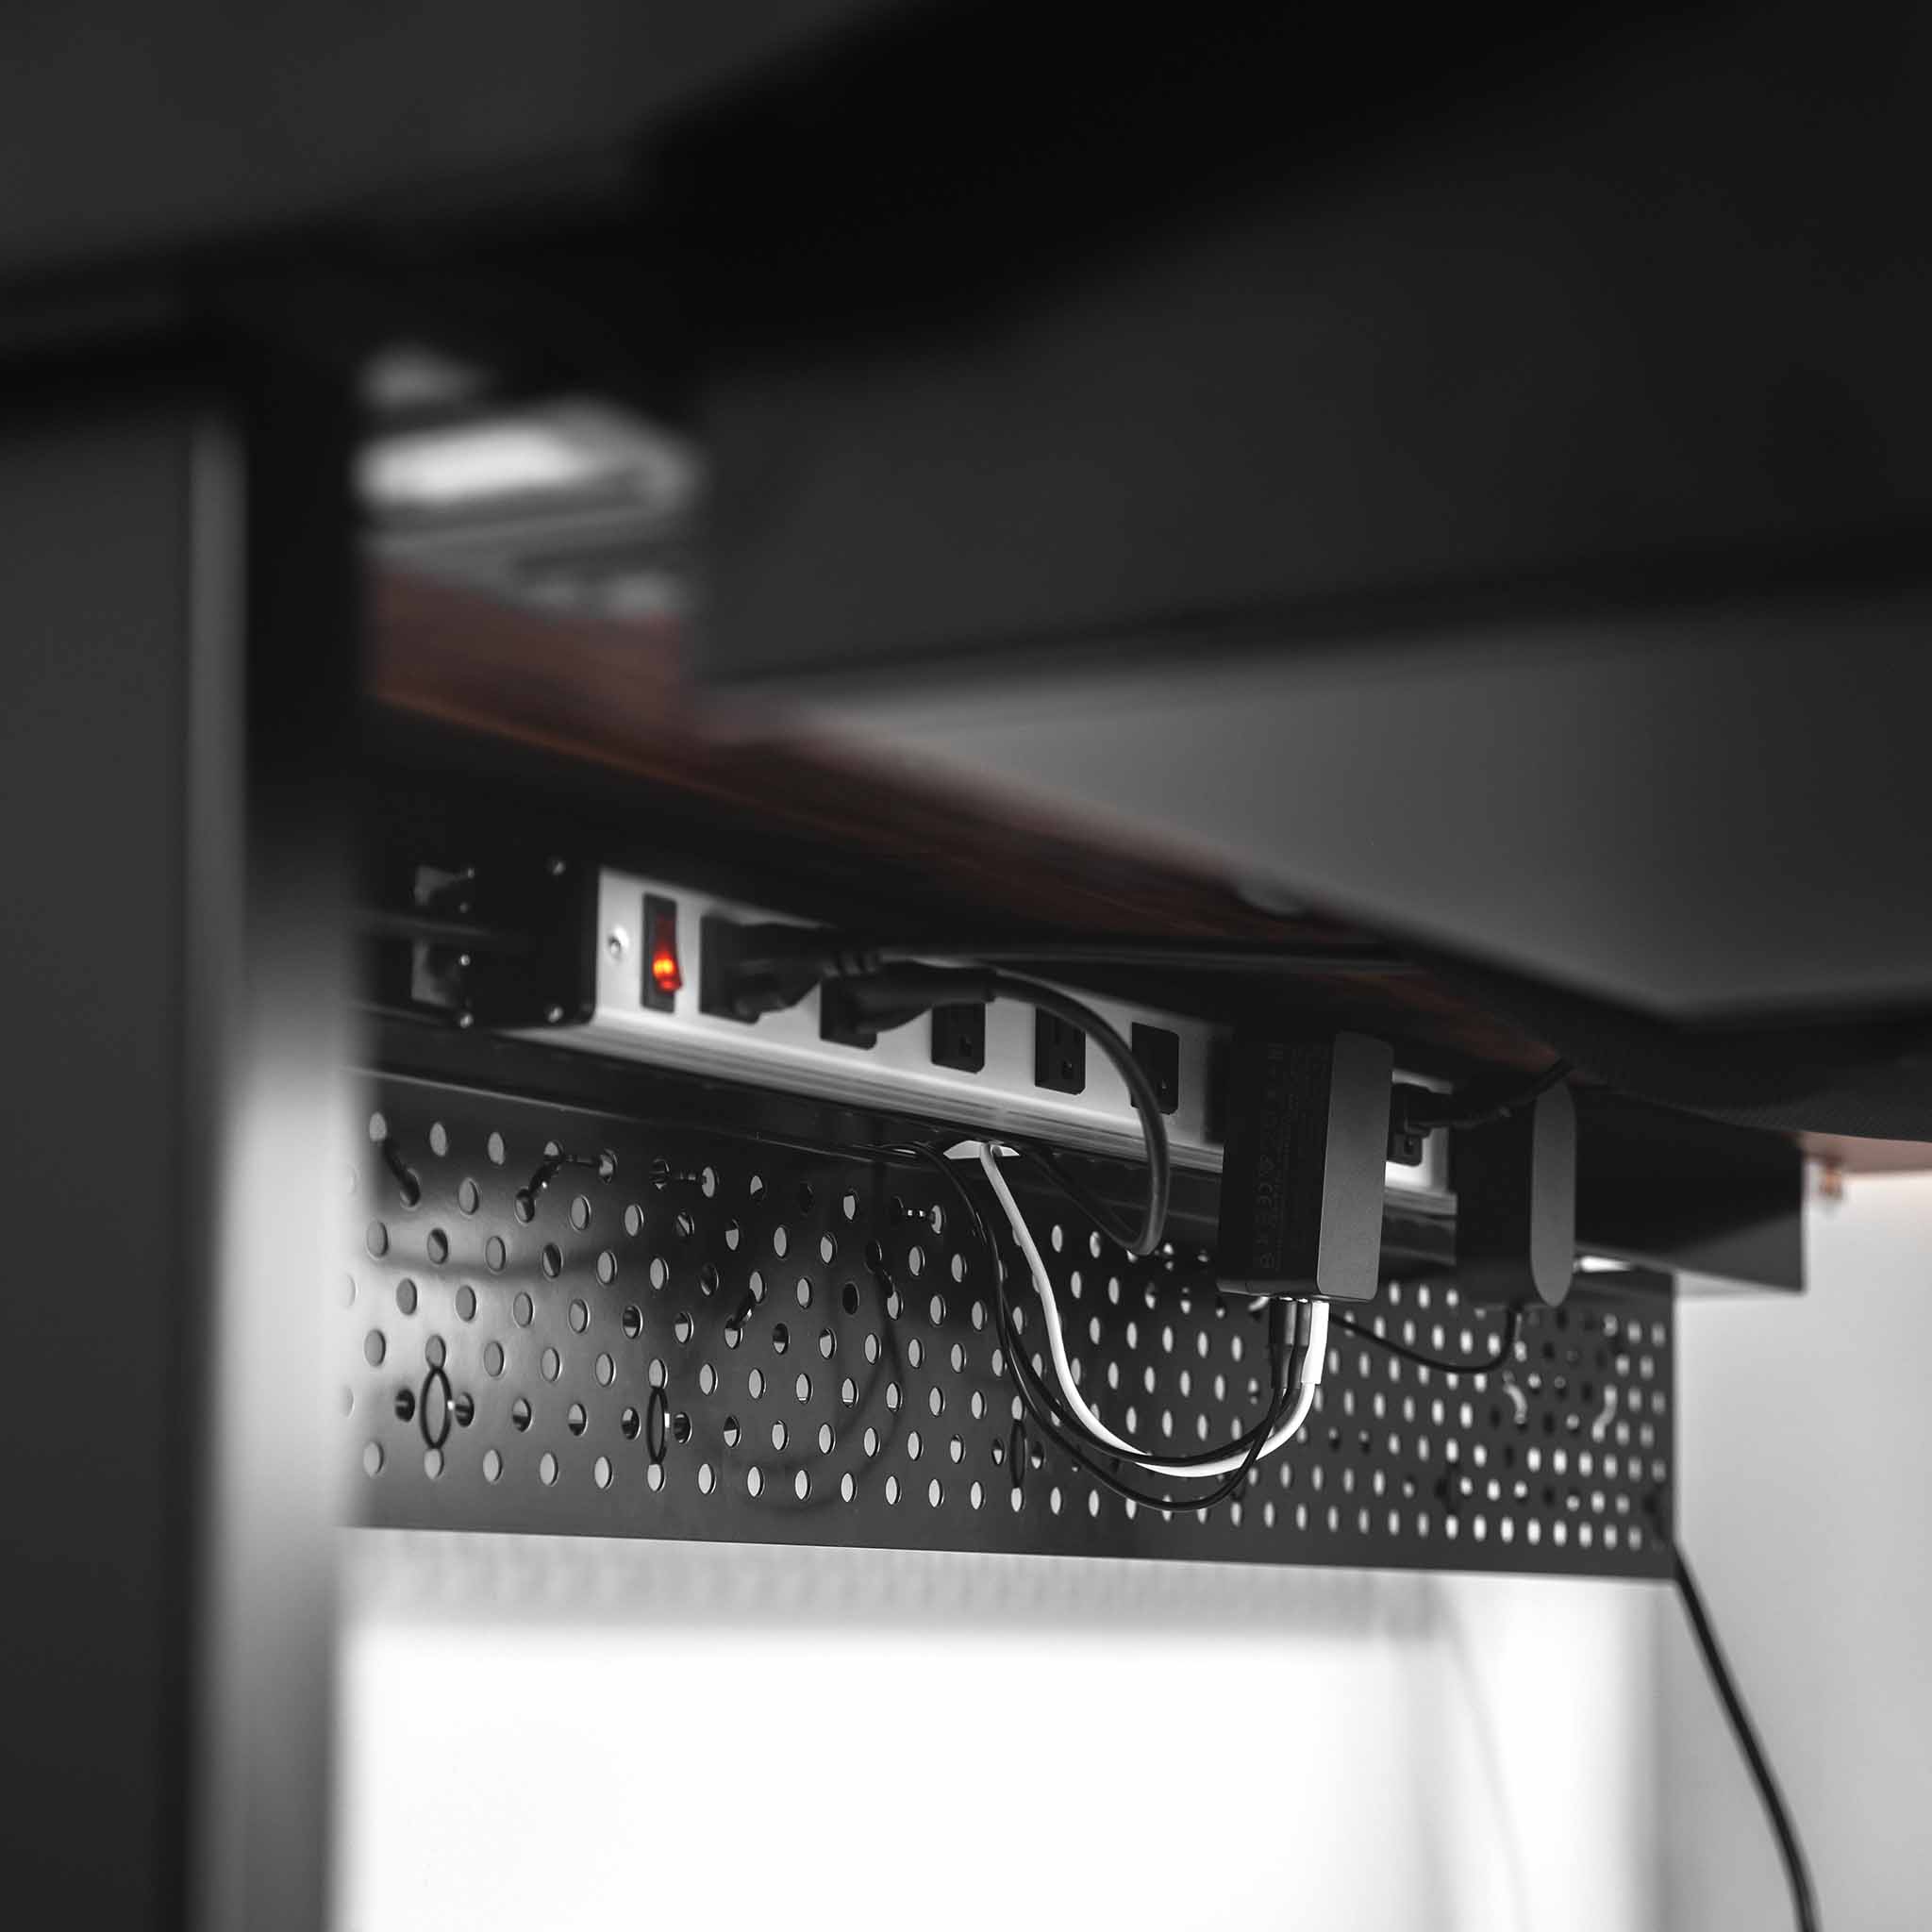 Ultimate Setup Cable Management net - Under Desk Cable Management Tray -  Cable net Under Desk - Desk Wire Management Under Desk - Cord Organizer  Desk